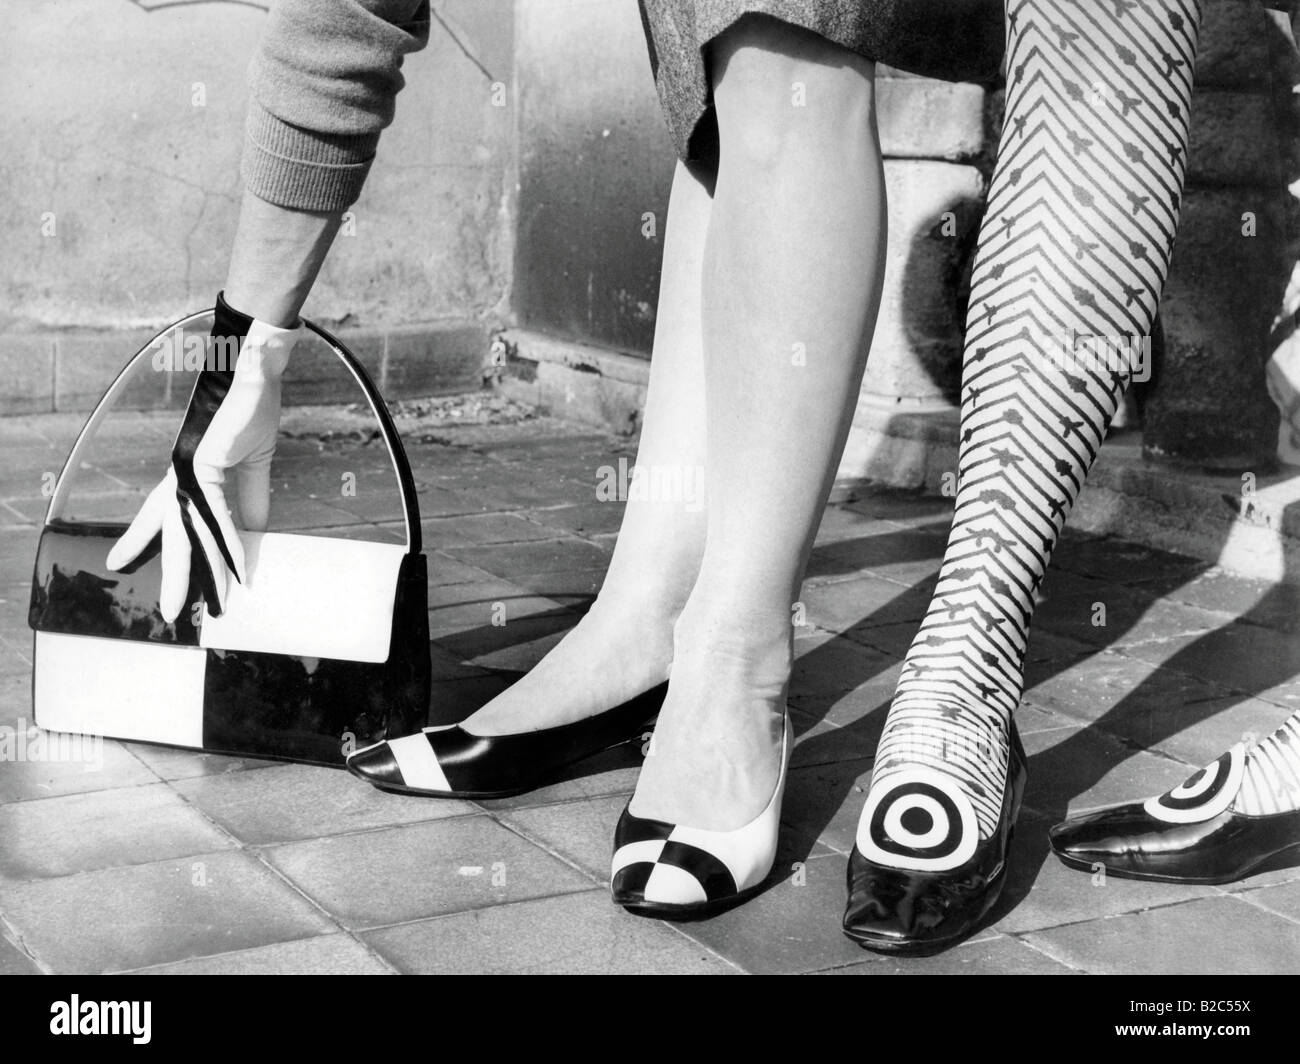 Les chaussures et le sac, photo historique d'environ 1955 Banque D'Images